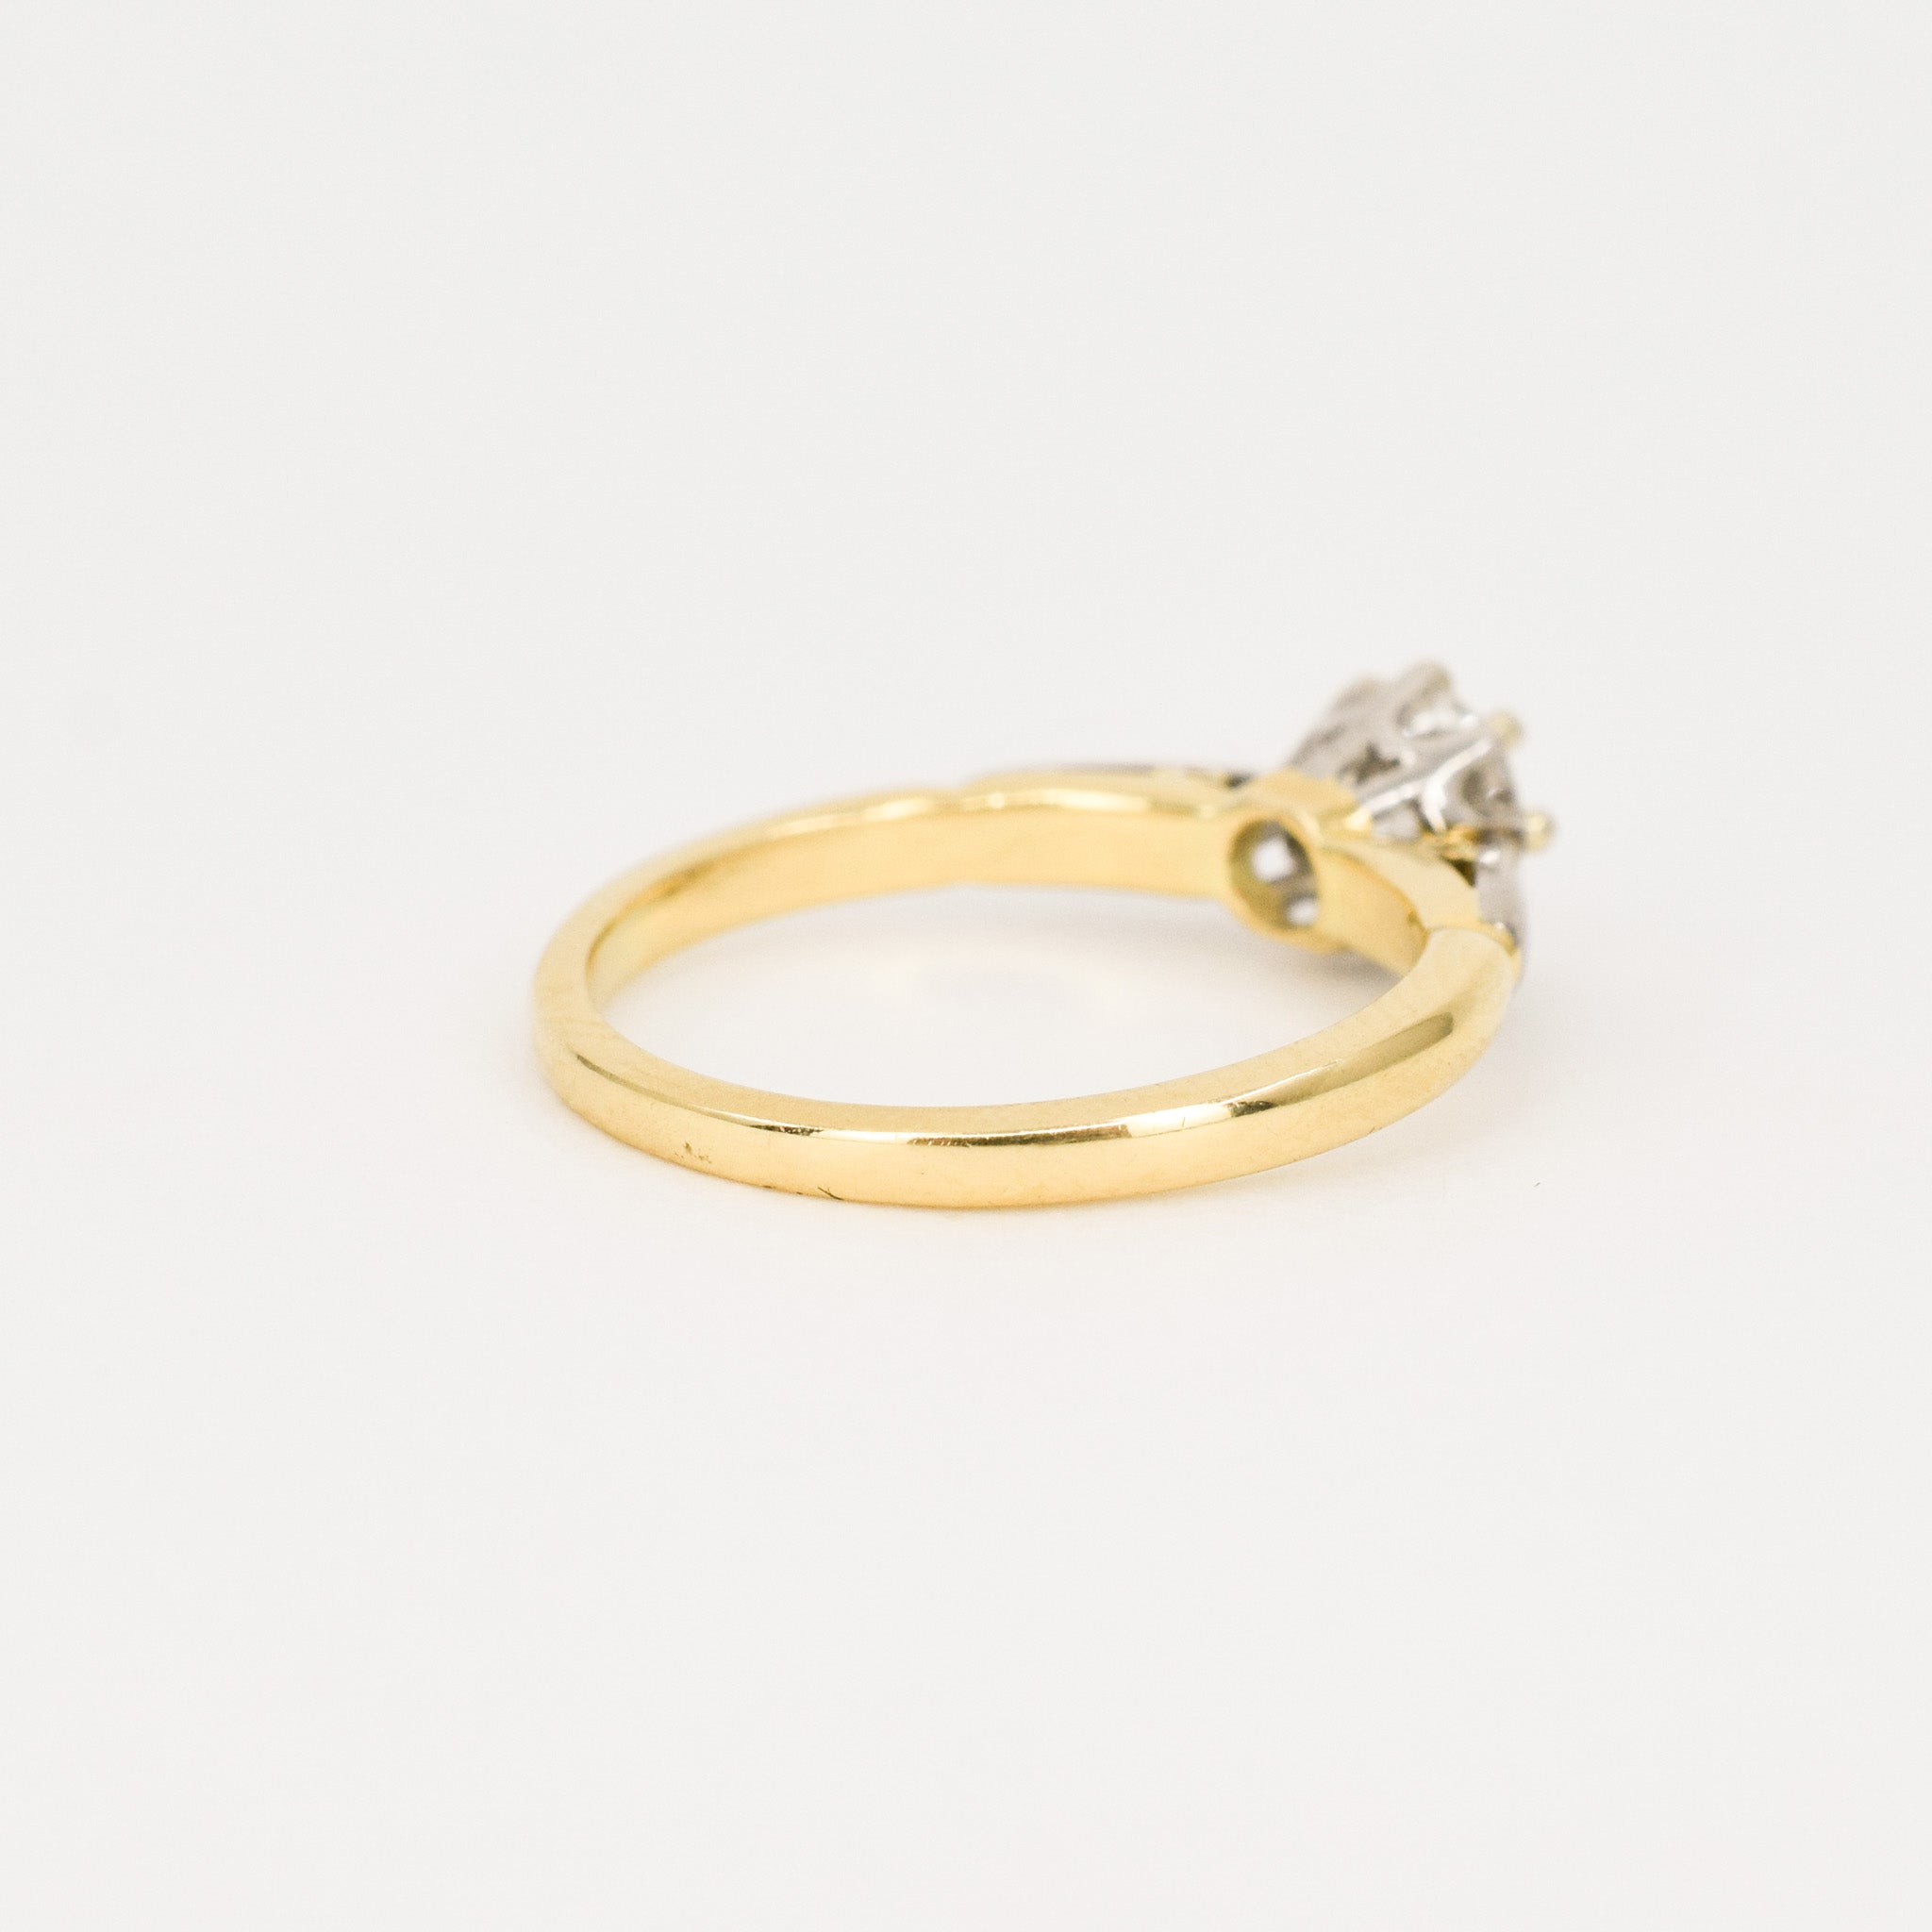 Exquisite Diamond Solitaire Ring (18k, platinum)